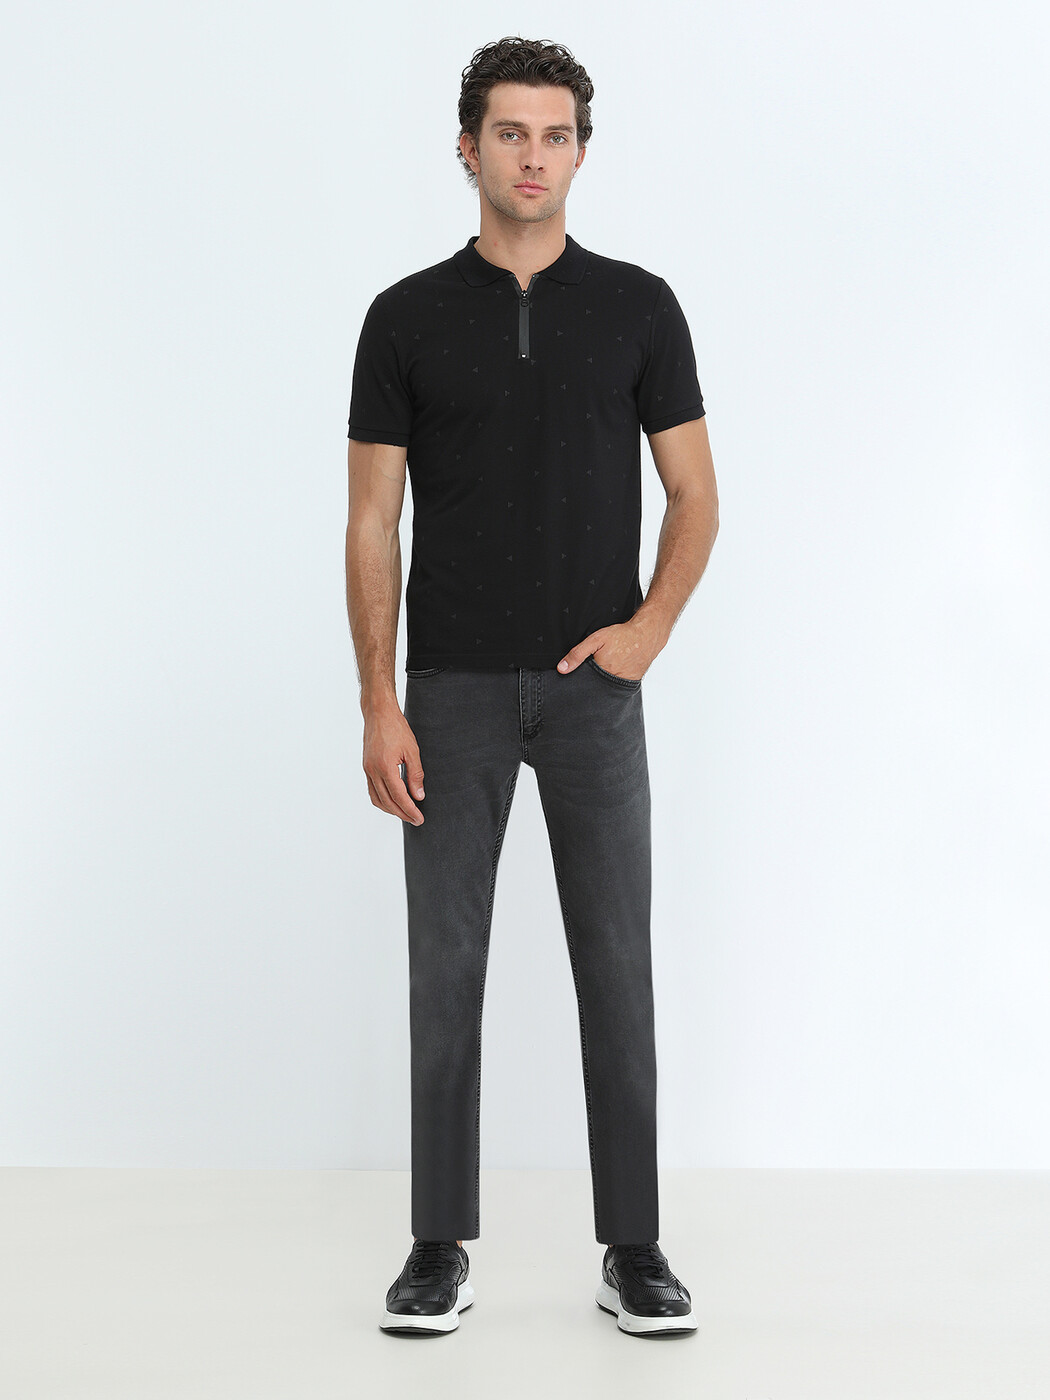 KİP - Siyah Baskılı Polo Yaka %100 Pamuk T-Shirt (1)